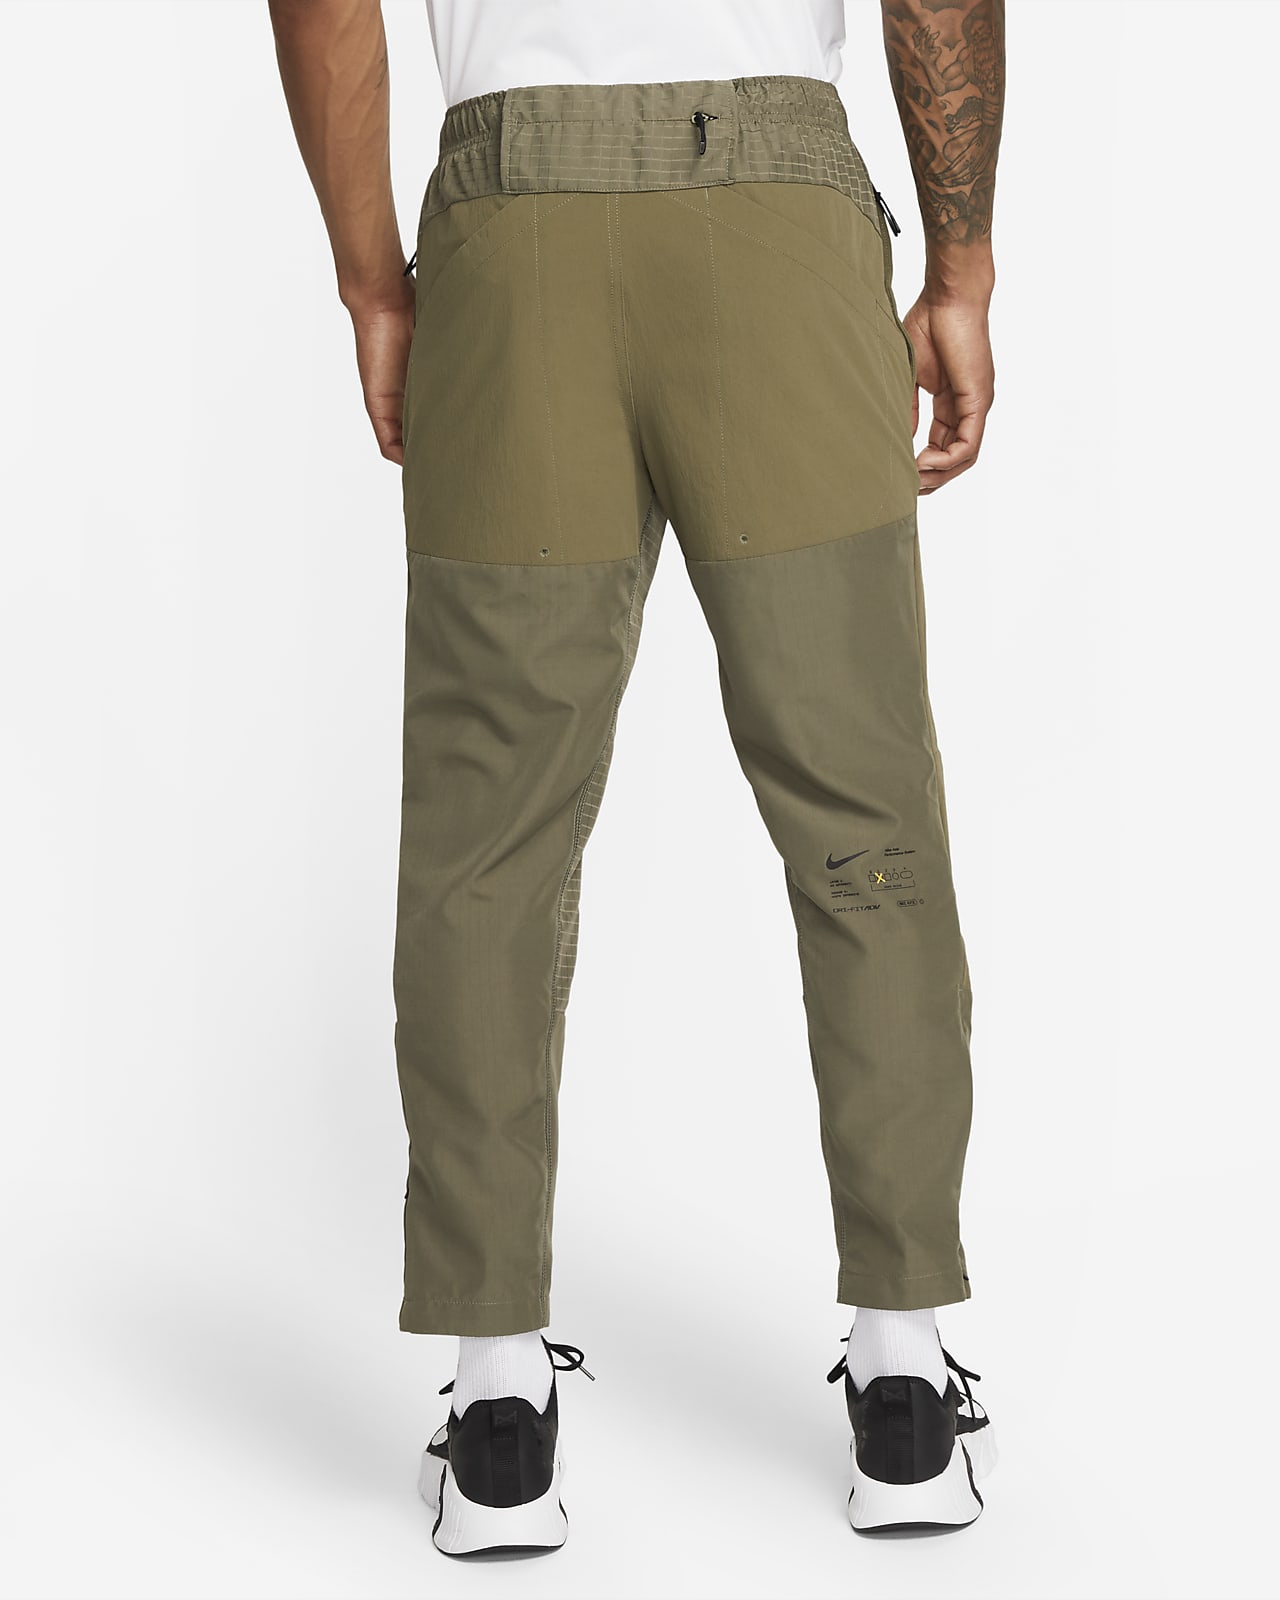 Men\'s Versatile Pants. Dri-FIT A.P.S. Woven ADV Nike